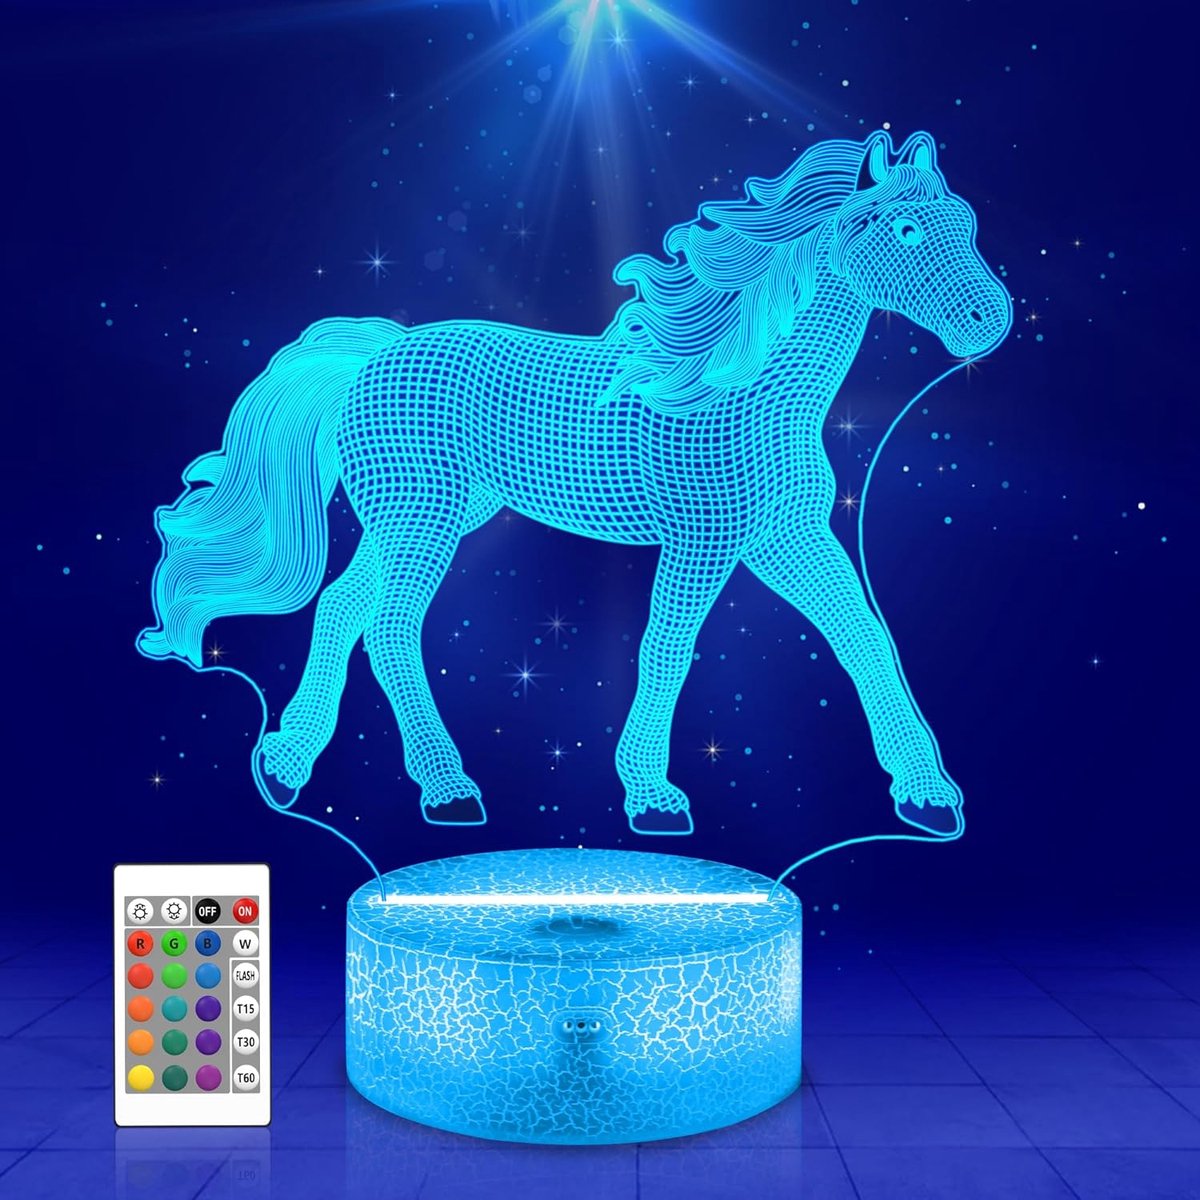 3D Paarden Nachtverlichting - Realistisch Paardenillusie Lamp met Afstandsbediening - Verstelbare Kleuren - Perfect als Geschenk voor Paardenliefhebbers